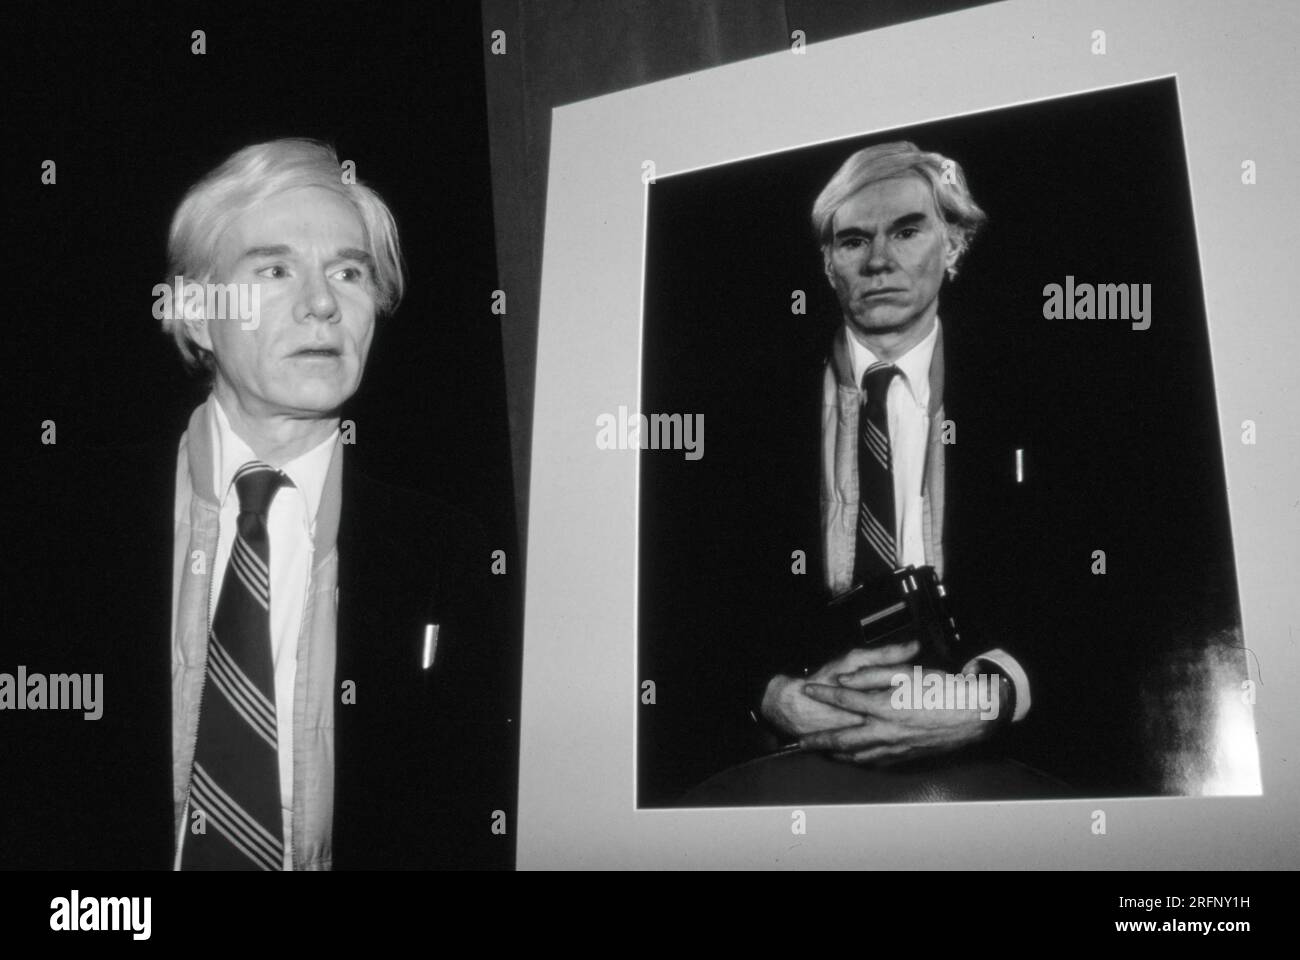 Artiste pop Andy Warhol avec un grand format 20 x 24 Polaroid imprimer portrait de lui-même. Photo de Bernard Gotfryd Banque D'Images